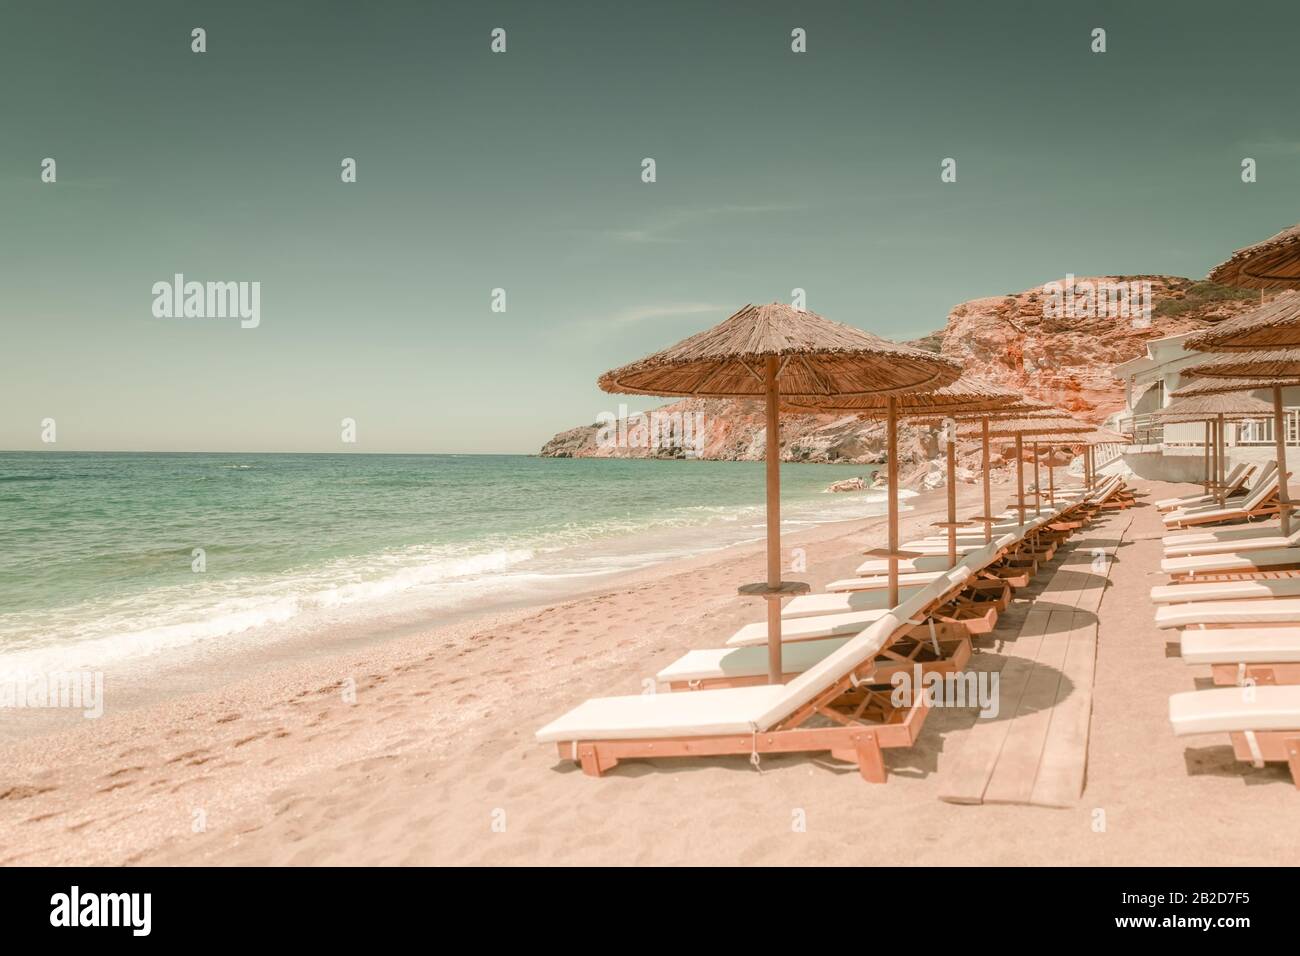 Incredibile paesaggio di spiaggia sabbiosa con sedie per il relax e ombrelloni nella giornata di sole. Isola di MILOS sul Mar Egeo. Grecia. Vacanza in paradiso concetto Foto Stock